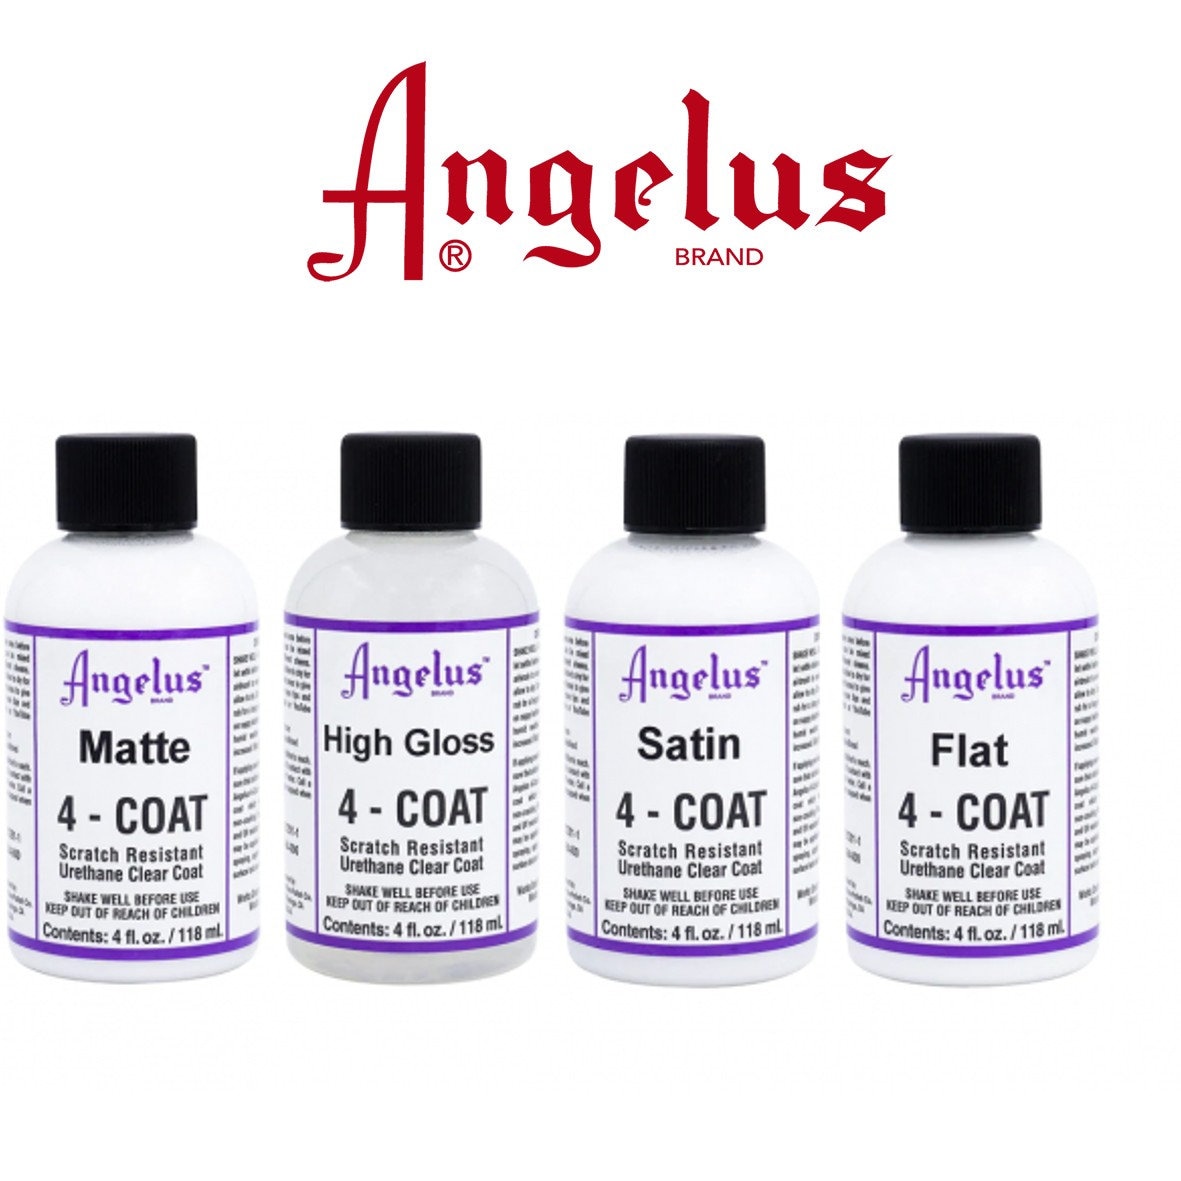 ANGELUS LEATHER PAINT Kits / Best Seller Kit / Neon Kit / Metallic